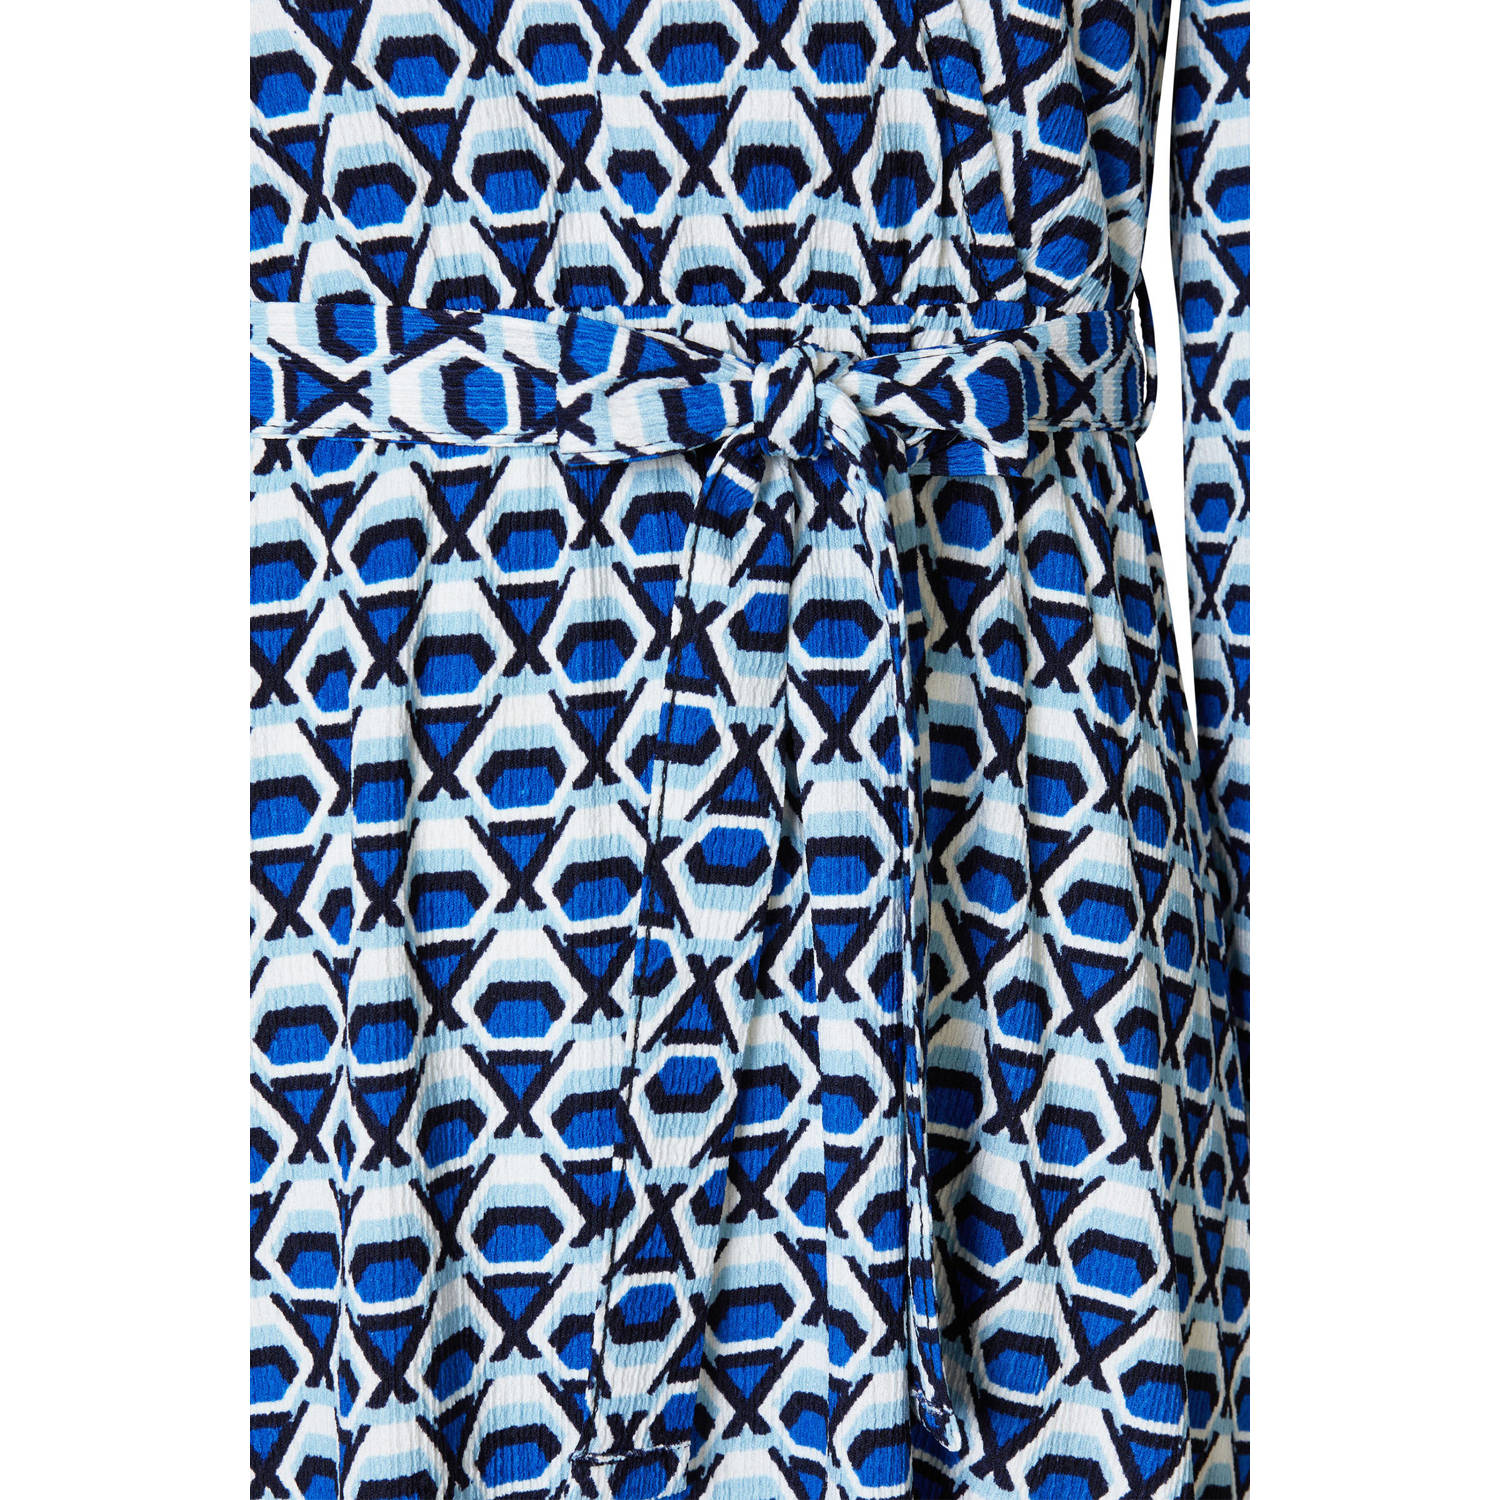 Miss Etam Plus A-lijn jurk met all over print en ceintuur blauw